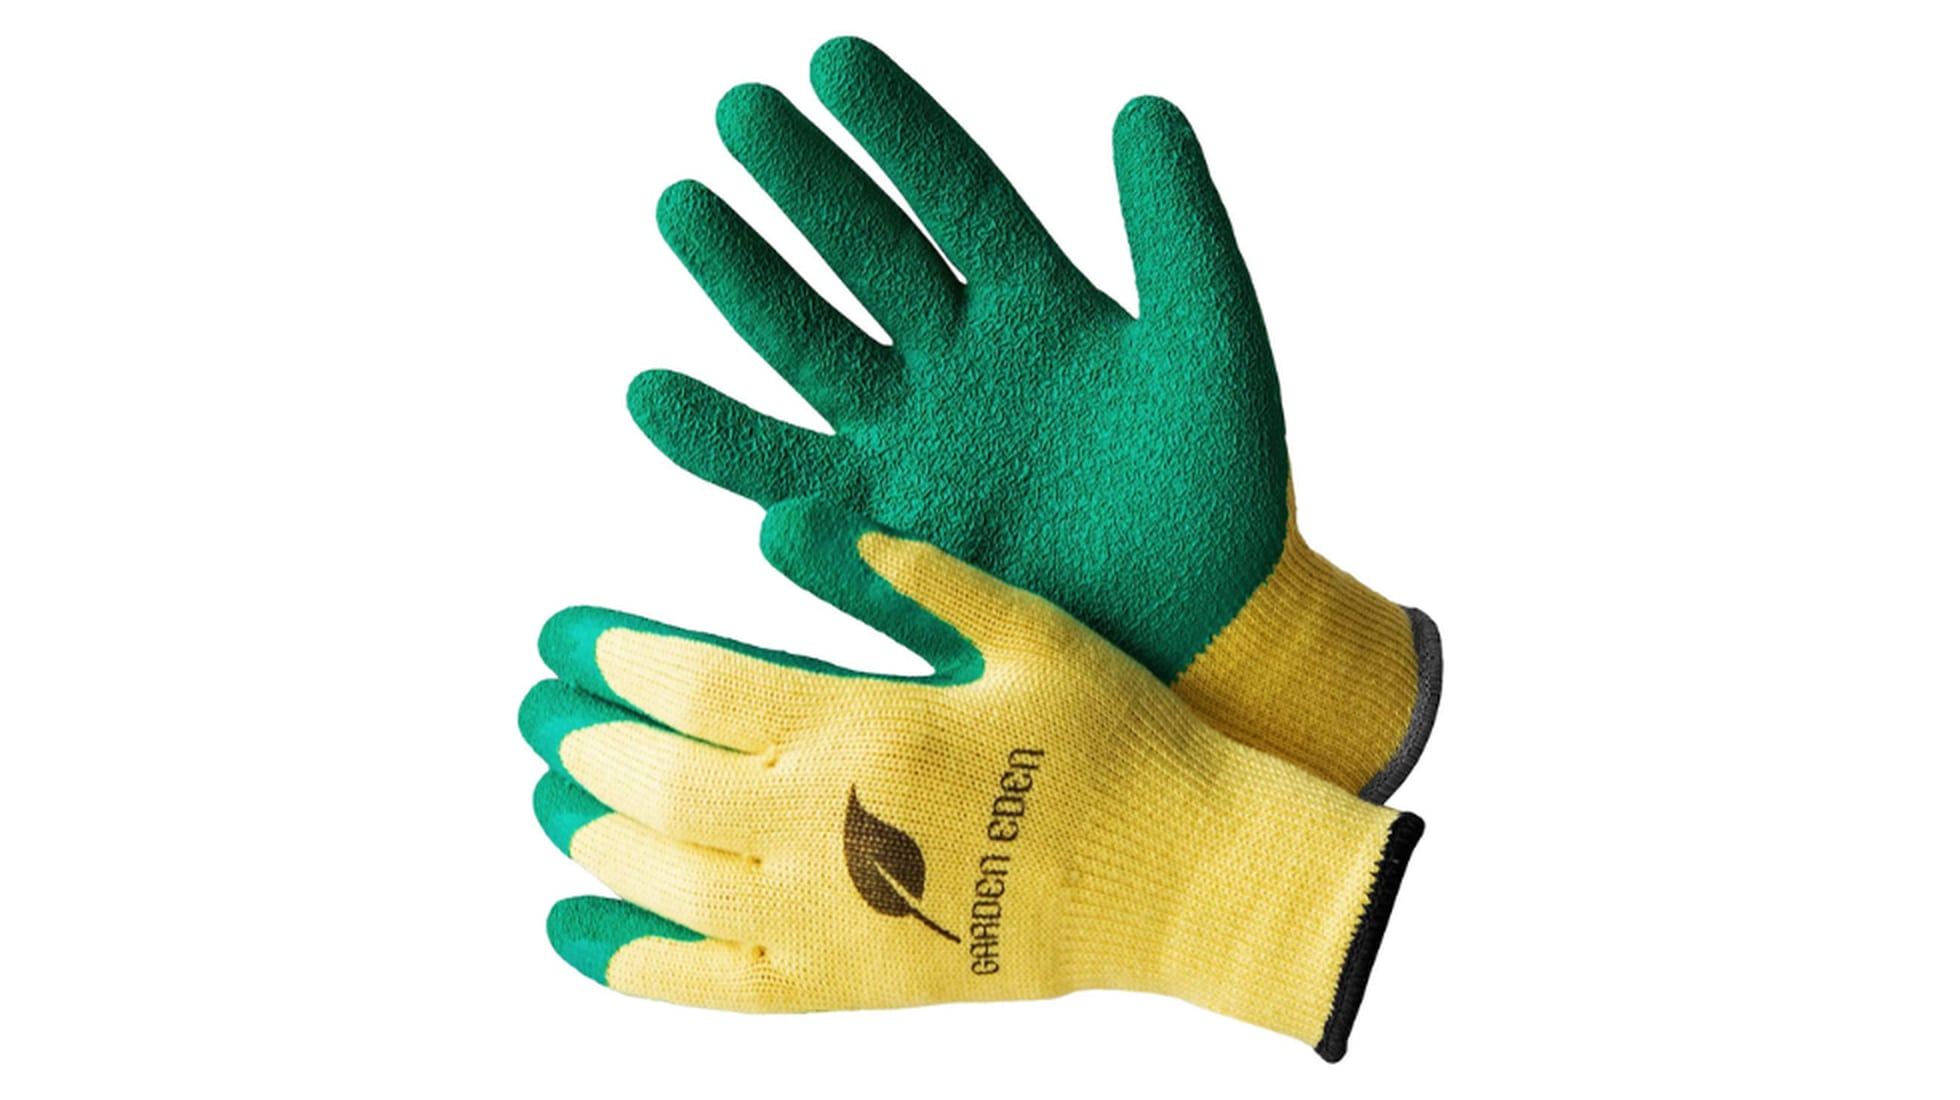 Estos guantes de jardinería son perfectos para proteger tus manos